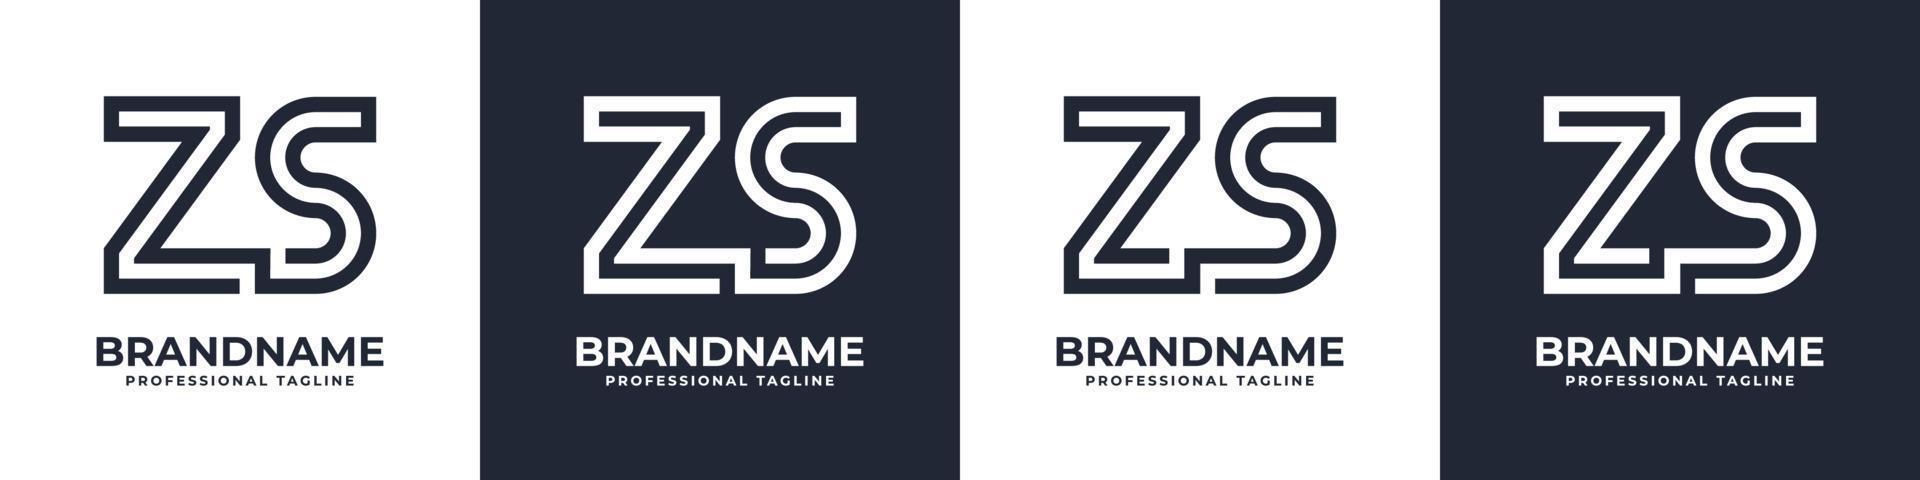 gemakkelijk zs monogram logo, geschikt voor ieder bedrijf met zs of sz voorletter. vector